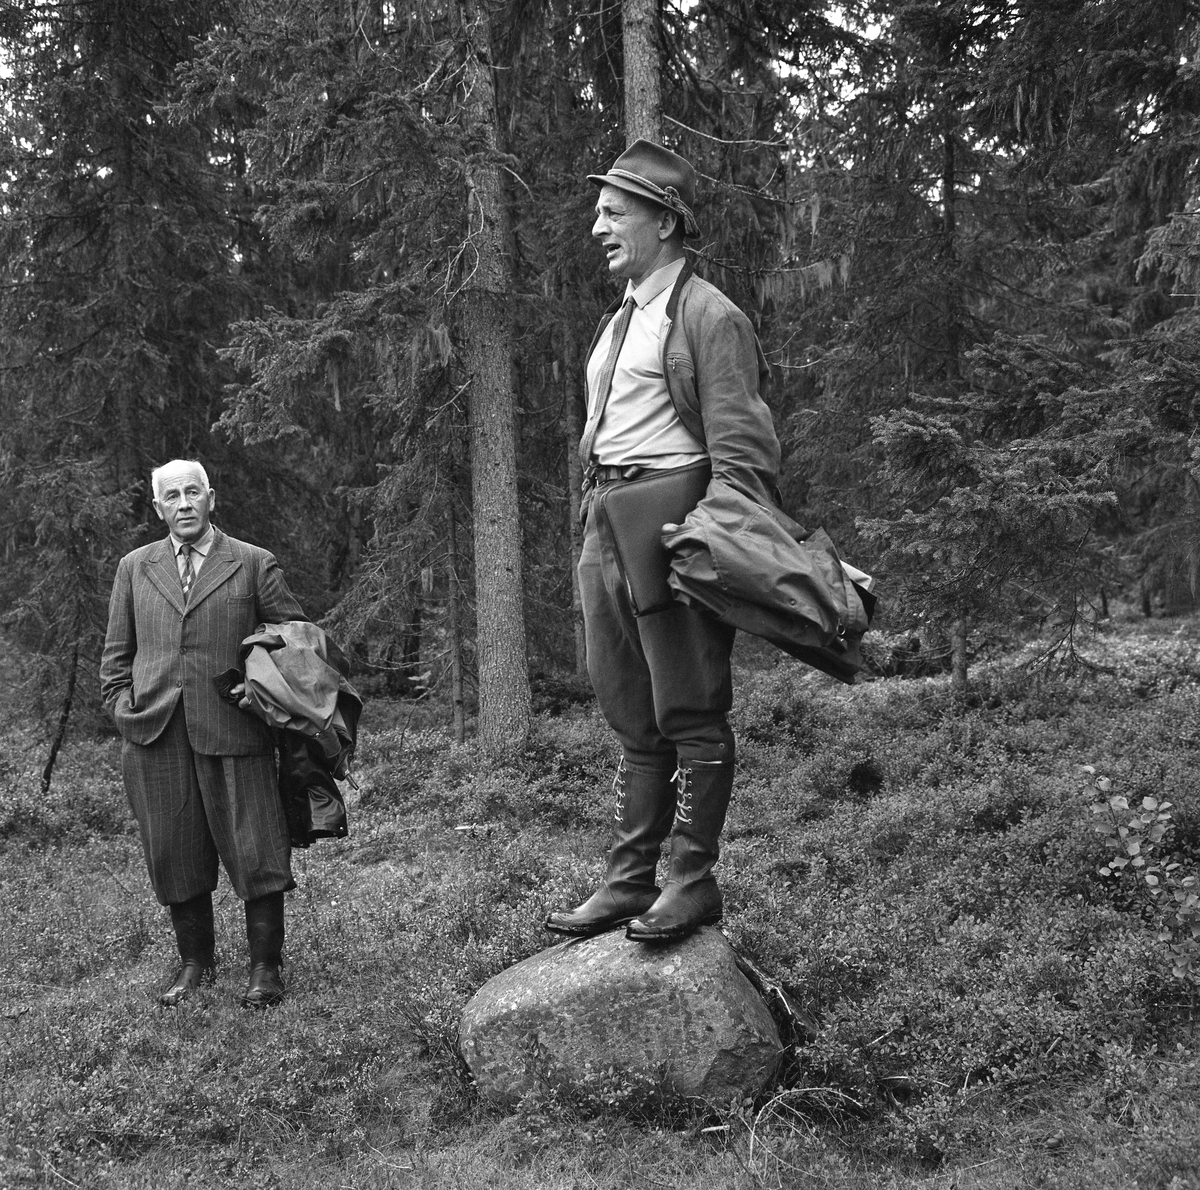 Skogdag på Jønsberg landbruksskoles skogeiendom Grøtbekklia, nær Tjernmoen i Søre Osen, Trysil, Hedmark. Mannen som sto på en stein og talte da dette fotografiet ble tatt var Per Kraft-Pettersen (1913-1968), som på dette tidspunktet var skogbrukslærer ved landbruksskolen. Kraft-Pettersen var trønder, født i Namsos, og utdannet ved skogbrukslinja på Norges landbrukshøgskole, der han tok avsluttende eksamen i 1938. Året etter ble han ansatt som herredsskogmester i Lierne i Nord-Trøndelag. Seinere var han altså skogbrukslærer, først på Jønsberg, seinere på Storsteigen landbruksskole, hvor skogbruksundervisningen var kombinert med herredsskogmesterposten i Alvdal og Folldal.

Da Kraft-Pettersen døde, publiserte regionavisa Østlendingen følgende usignerte minneord:

«Herredsskogmesteren i Alvdal og Folldal, Per Kraft-Pettersen, døde plutselig onsdag. Det var hjertet som sviktet, og han ble bare 55 år gammel. 
Per Kraft-Pettersen var født og oppvokst i Namsos, og tok eksamen ved Norges Landbrukshøyskoles skogbrukslinje i 1938. Han var herredsskogmester i Lierne i Namdalen fra 1938, deretter skogbrukslærer ved Jønsberg landbruksskole, og på slutten leder av skolens skogbruksavdeling, i til sammen 10 år inntil han tiltrådte som herredsskogmester i Alvdal/Folldal og som skogbrukslærer ved Storsteigen landbruksskole høsten 1965. Han var kjent som en særdeles dyktig pedagog, og var ellers en vidsynt og allsidig skogens mann som de siste årene ikke minst interesserte seg for det nye begrepet utmarksnæring i dets videste betydning. I tråd med dette var han bl. a. formann i Alvdal Reisetrafikklag ett år, formann i Alvdal tiltaksnemnd og i aksjonskomiteen mot forurensing av Folla, og med i styret for Nord-Østerdal Forsøksring. Han var en rettfram og særdeles omgjengelig type som det var lett å komme på talefot med både i embeds medfør og ellers. Det blir tomt etter Per Kraft-Pettersen både i skogen i Alvdal/Folldal og i bygdebildet for øvrig.»